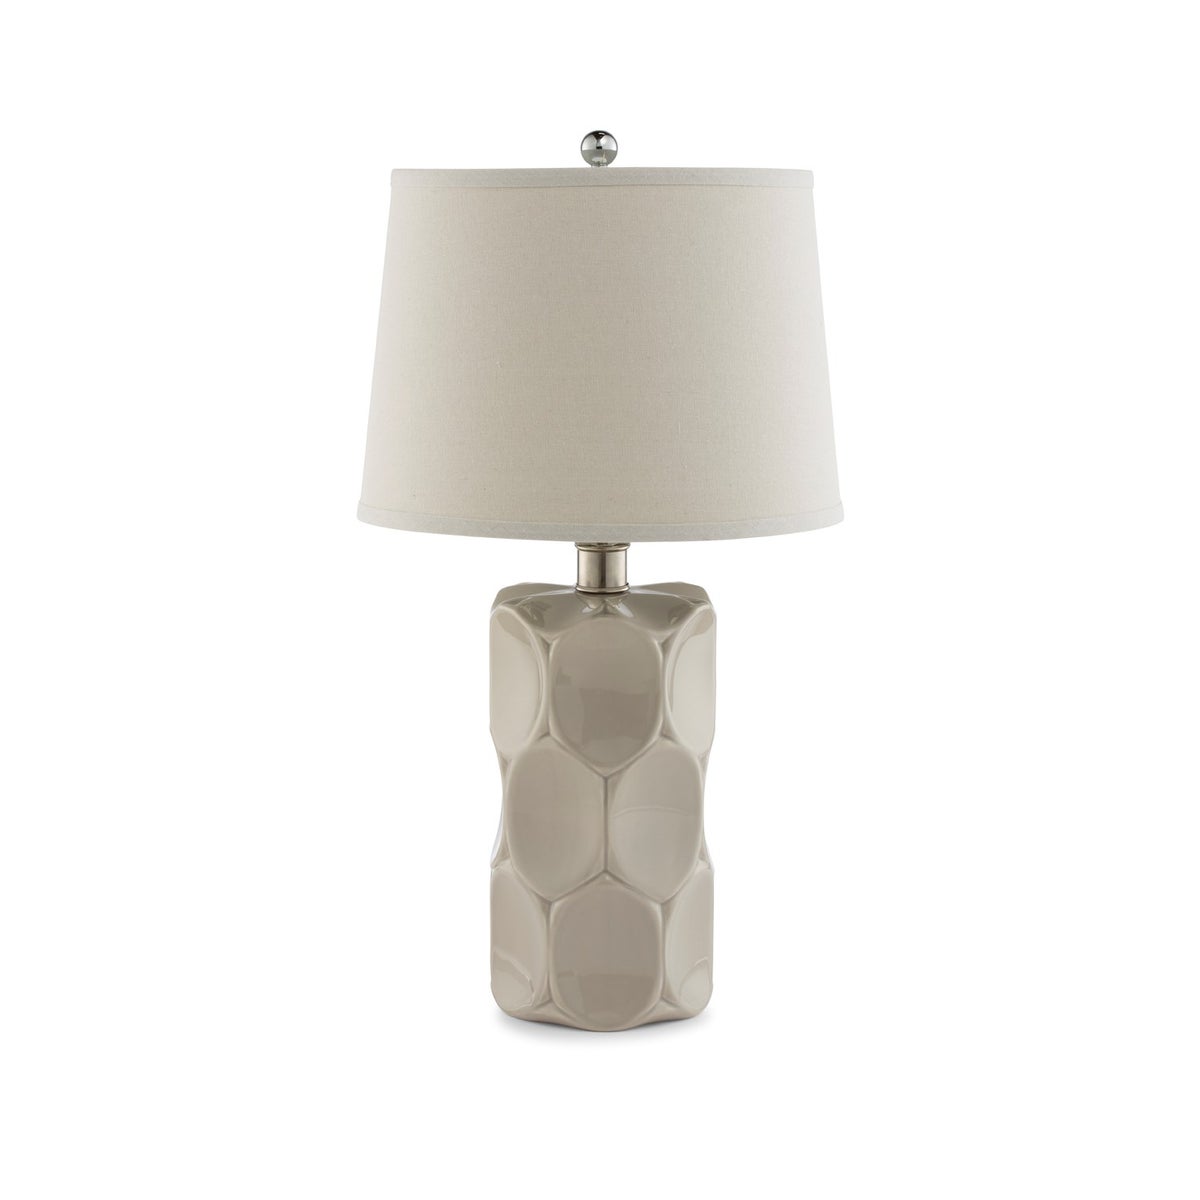 Marrant Lamp - Glazed Ceramic